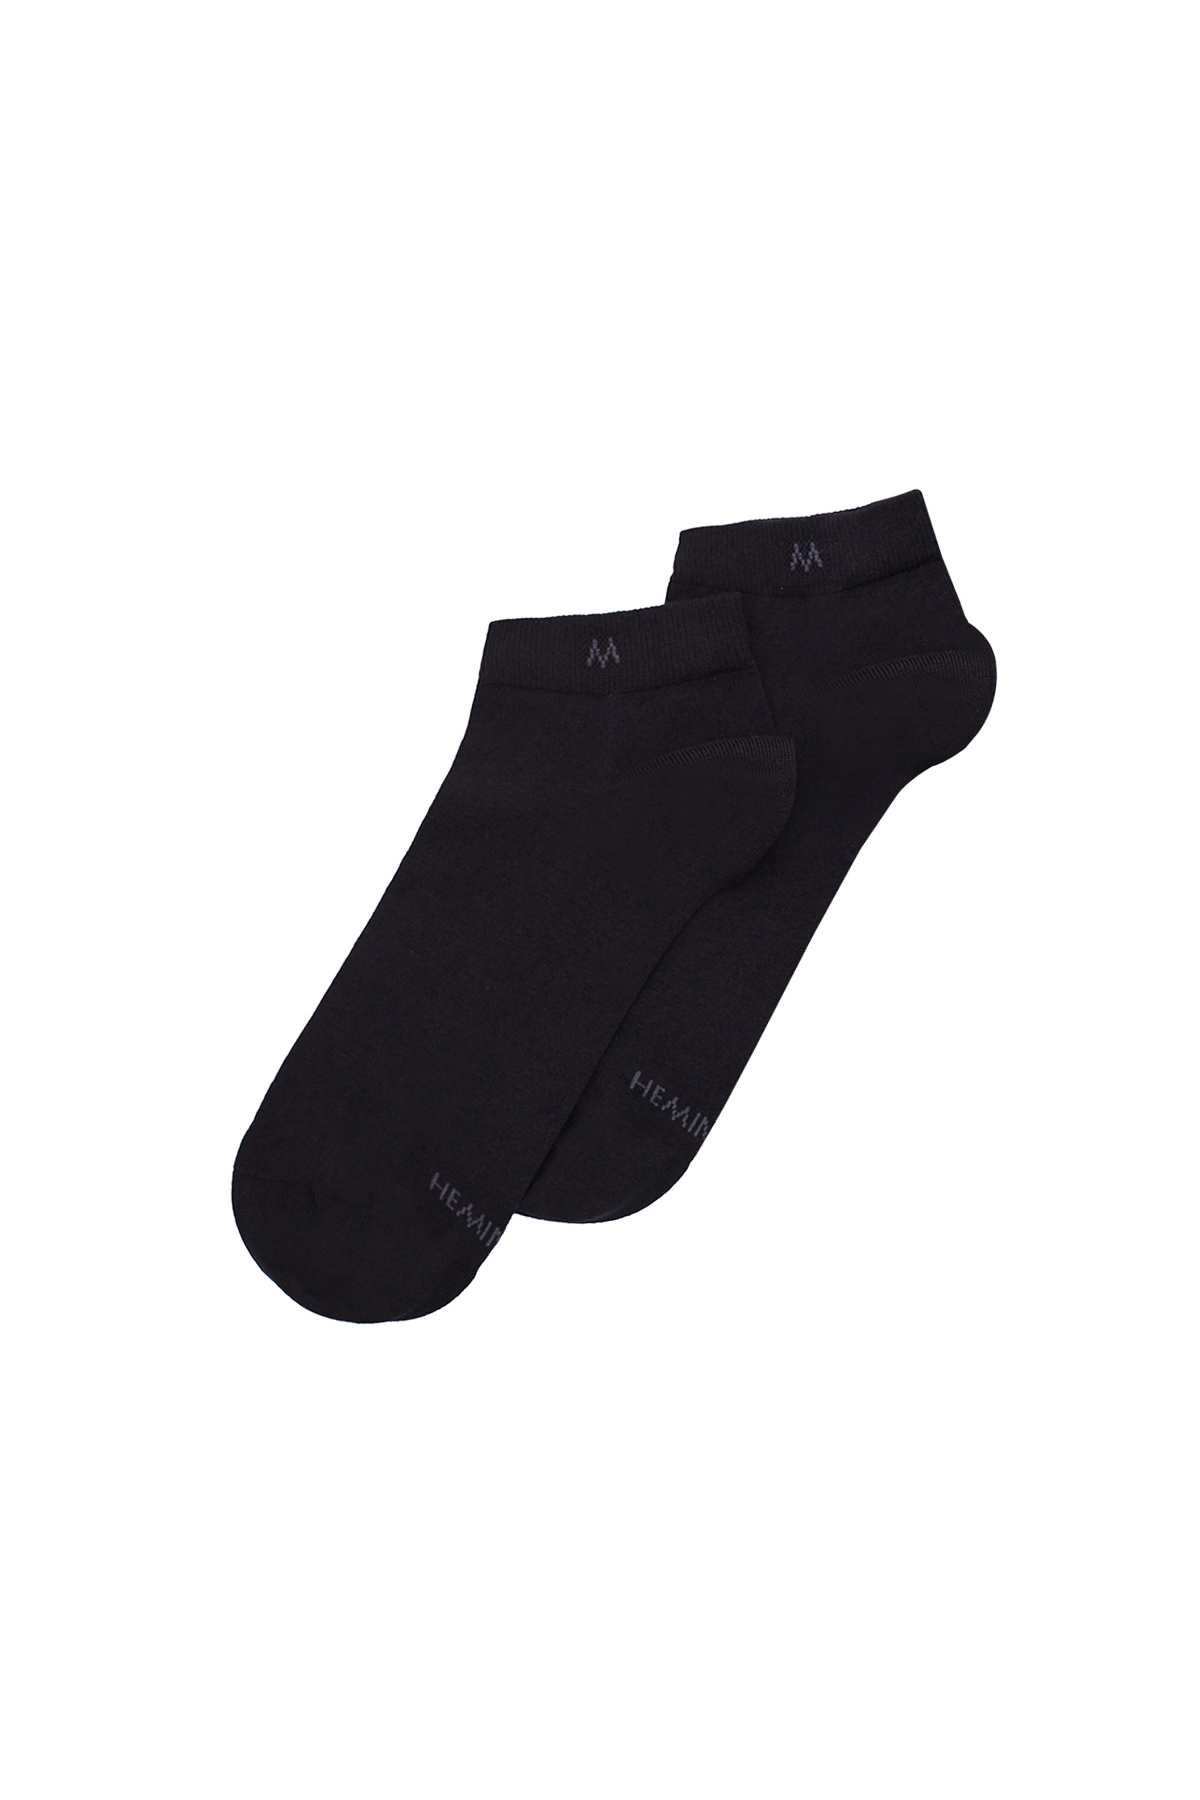 Pamuklu Siyah İkili Sneaker Çorap Seti